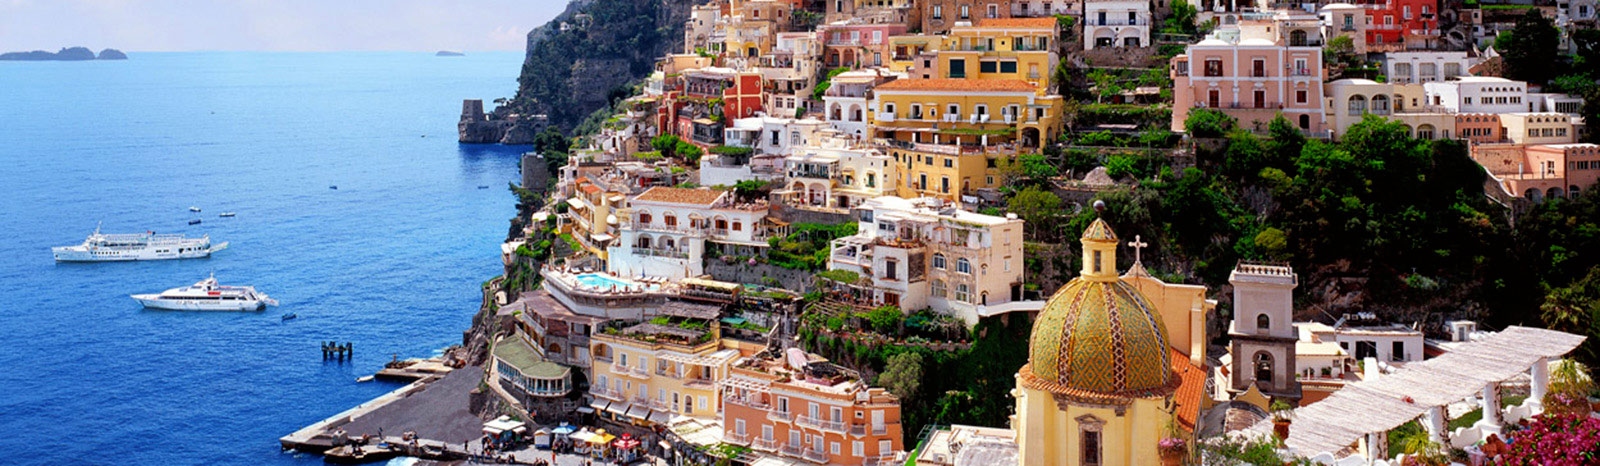 о.Капри, Италия фото #24227